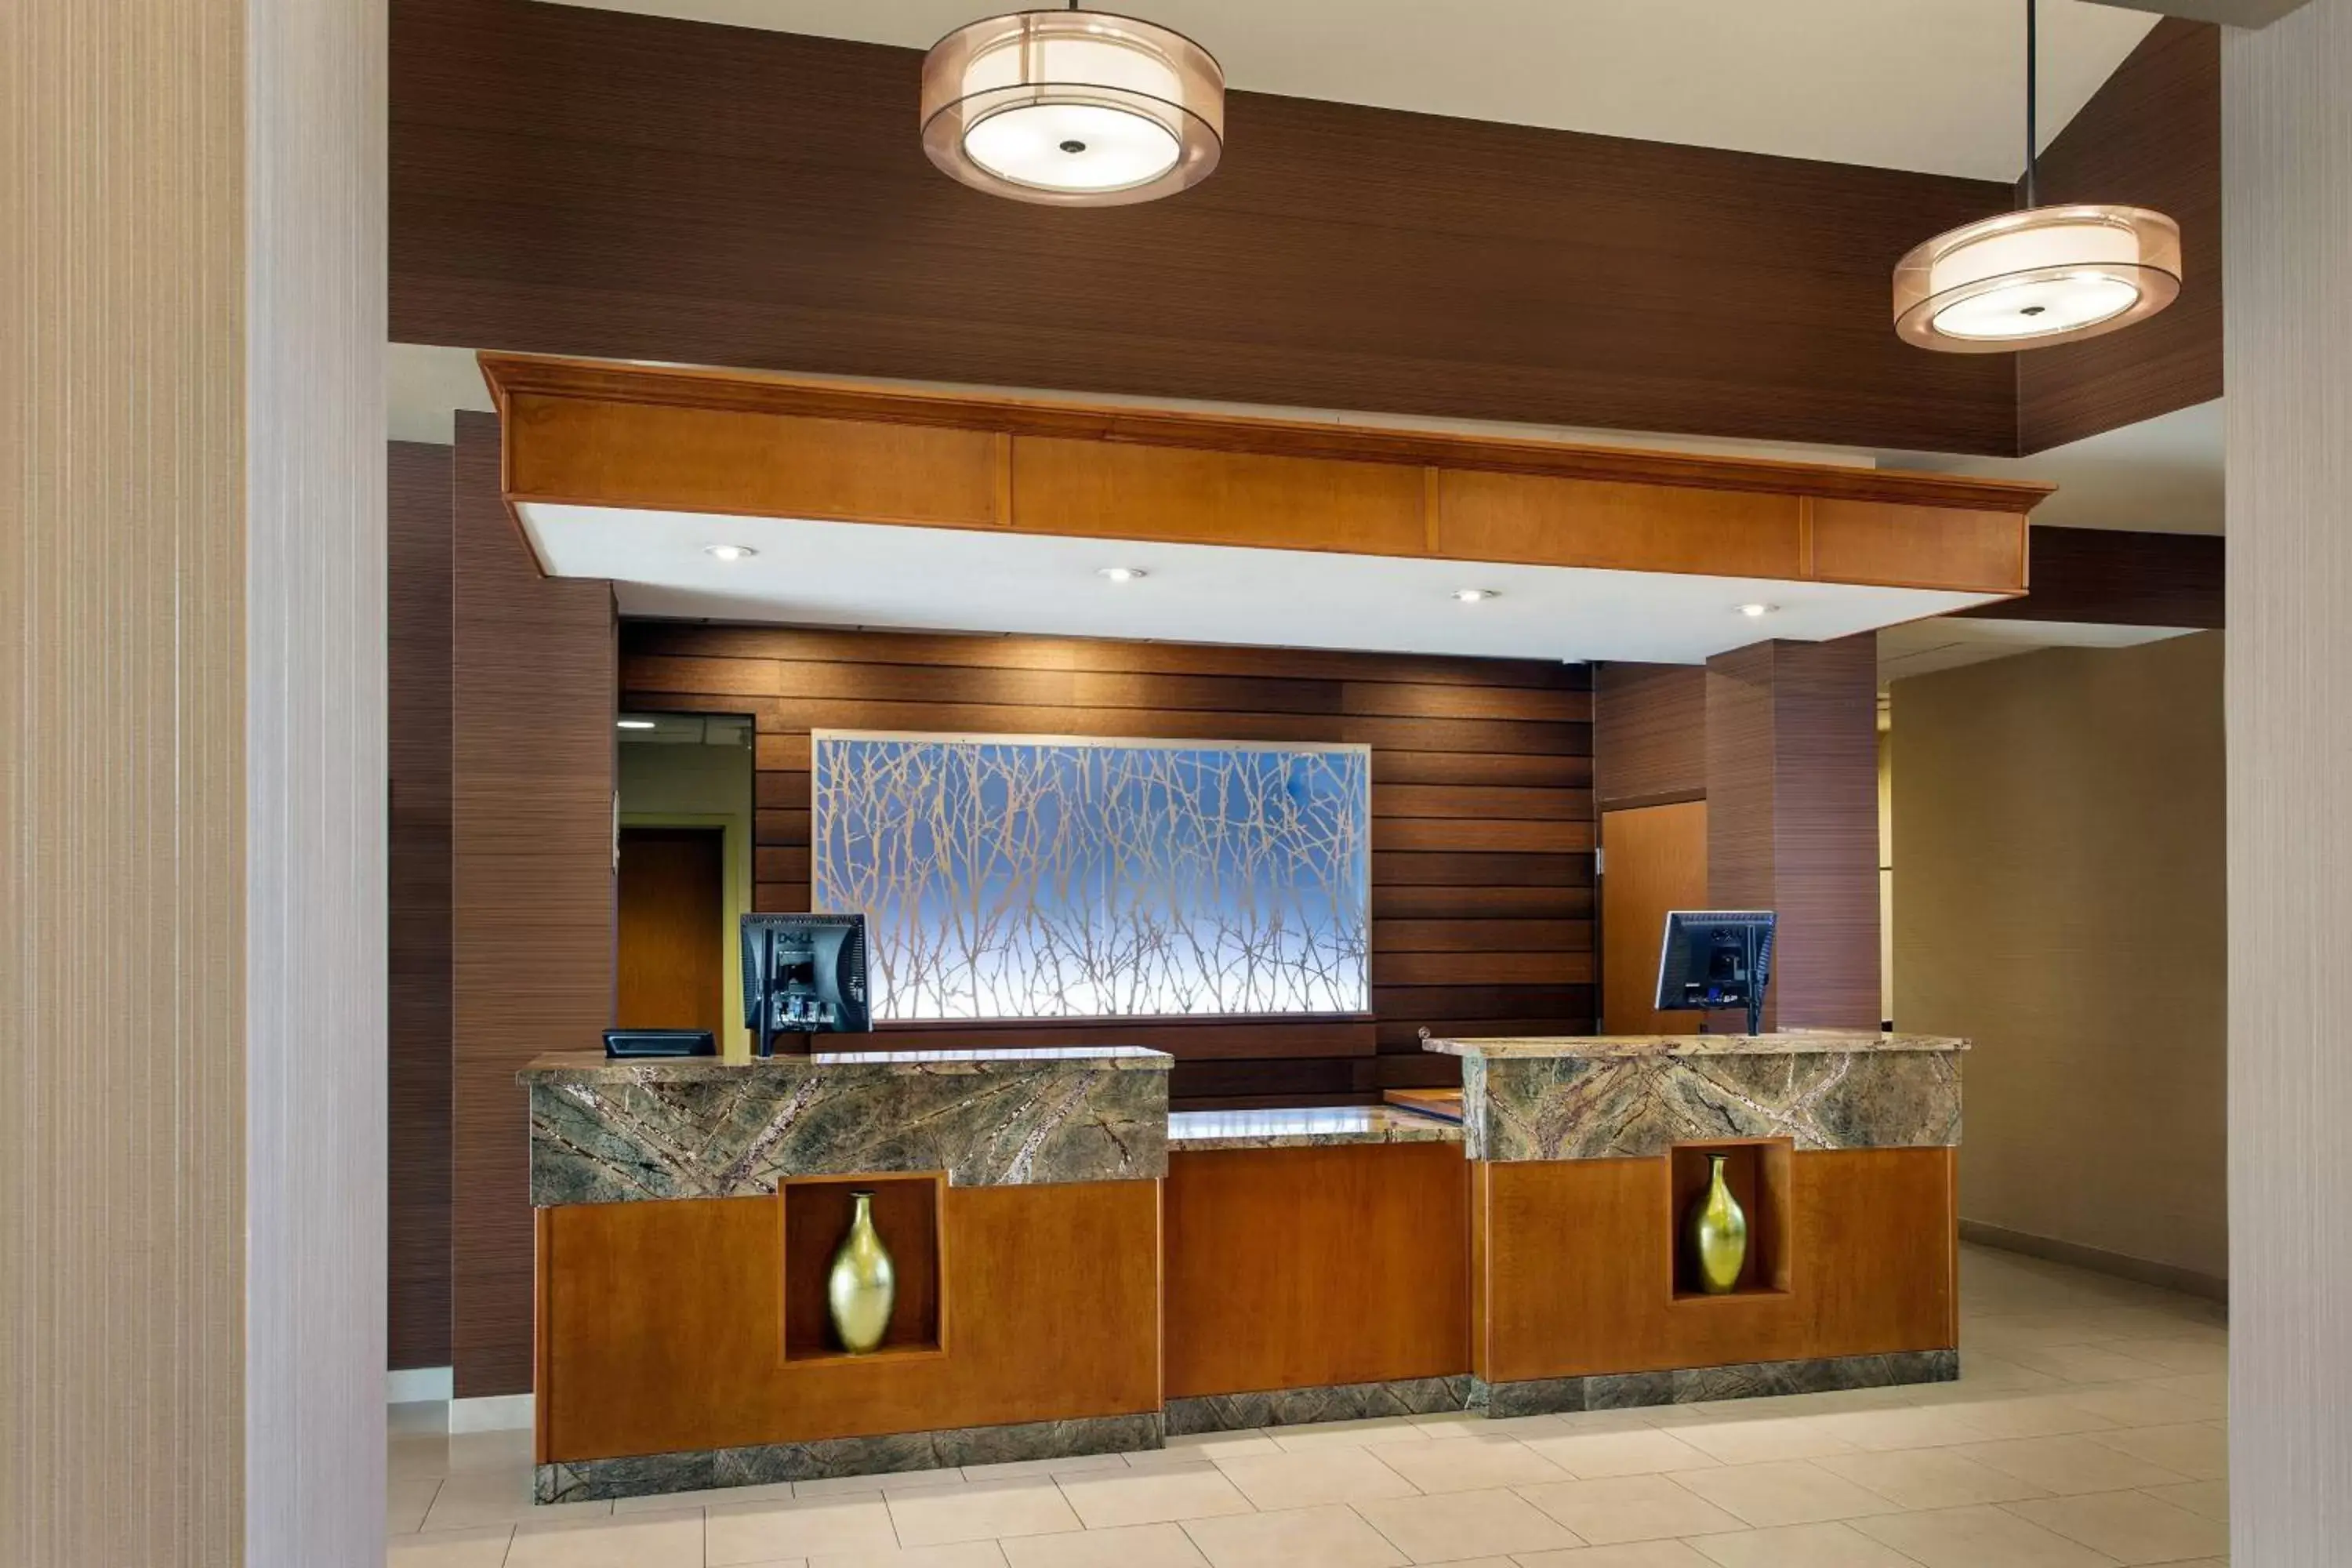 Lobby or reception, Lobby/Reception in Fairfield Inn Sacramento Cal Expo